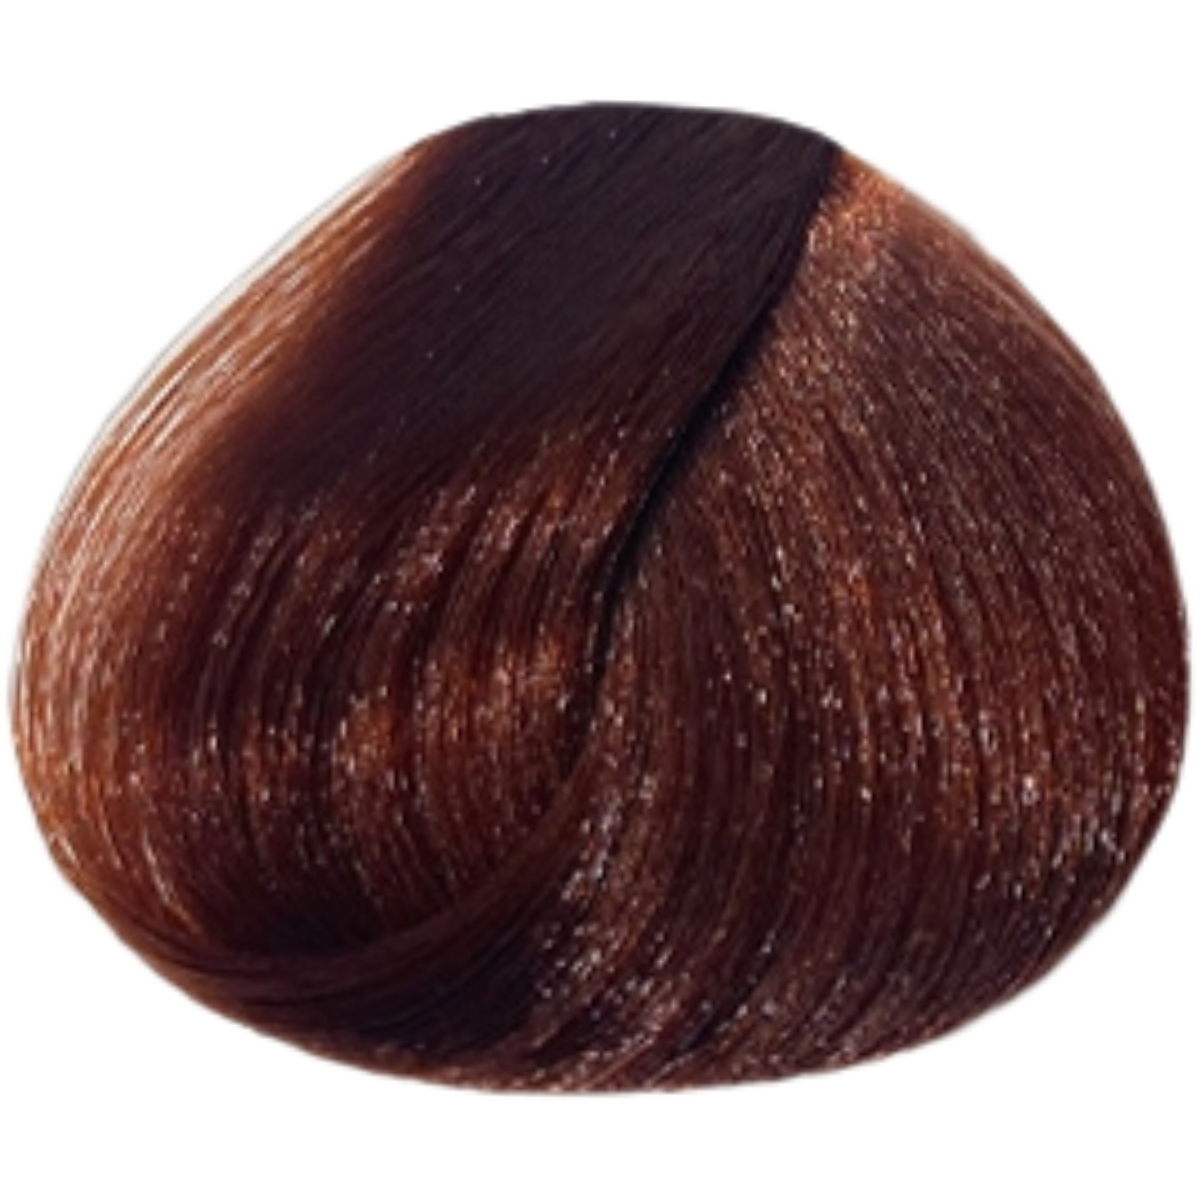 צבע שיער 5.43 LIGHT COPPER GOLDEN BLONDE פארמויטה FarmaVita צבע לשיער 100 גרם